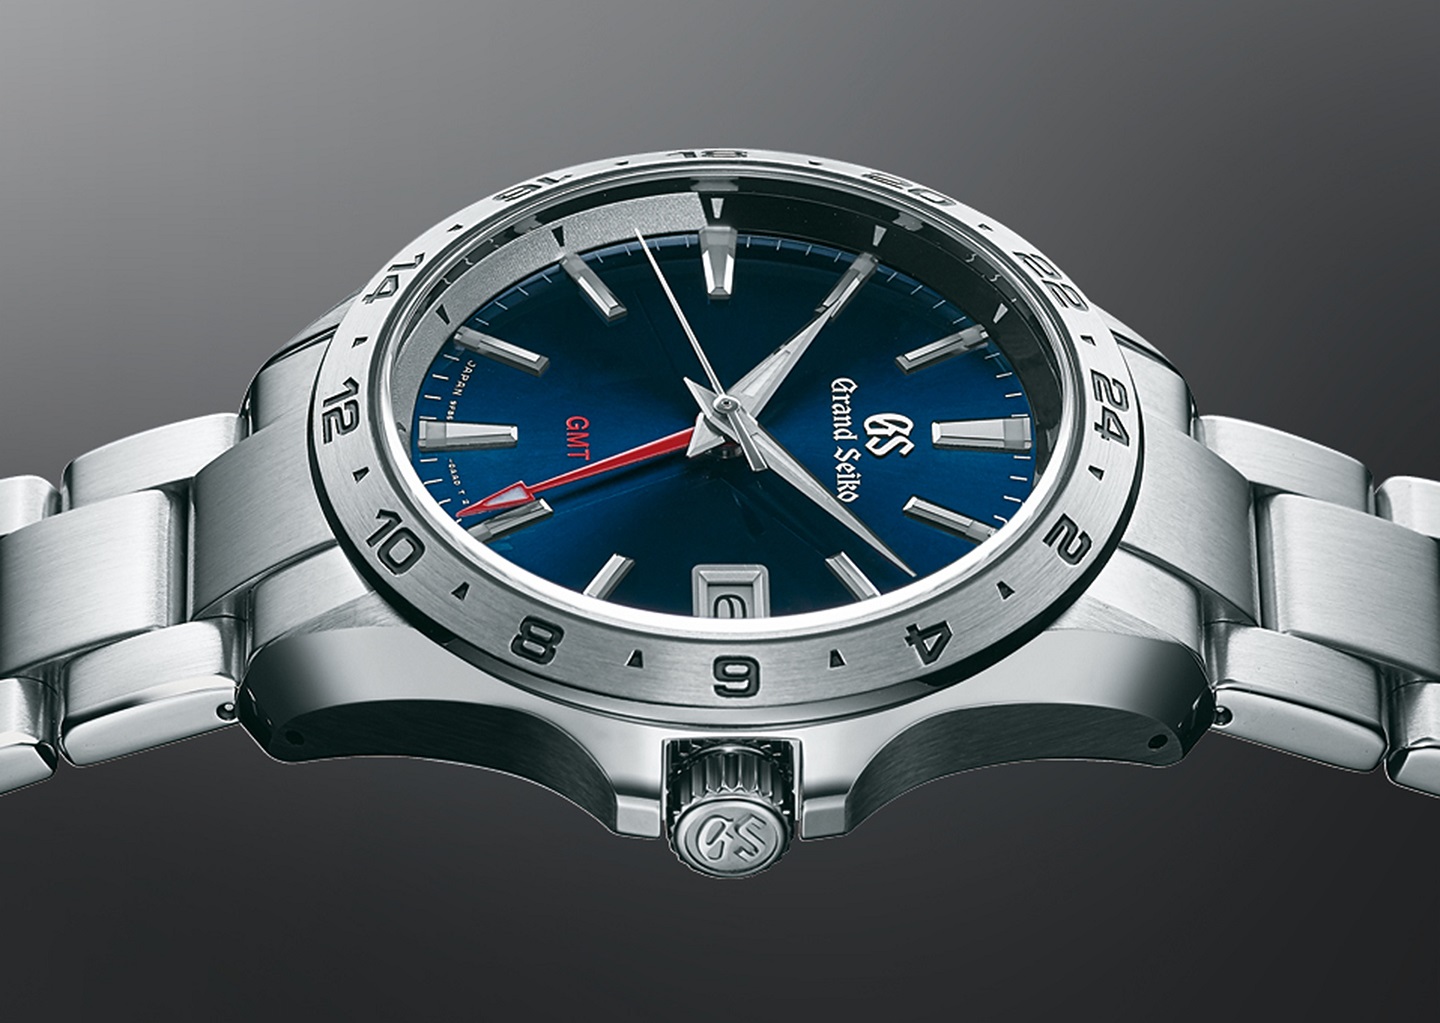 Grand Seiko 9F Quartz GMT Watches Featuring The First Ever 9F Quartz